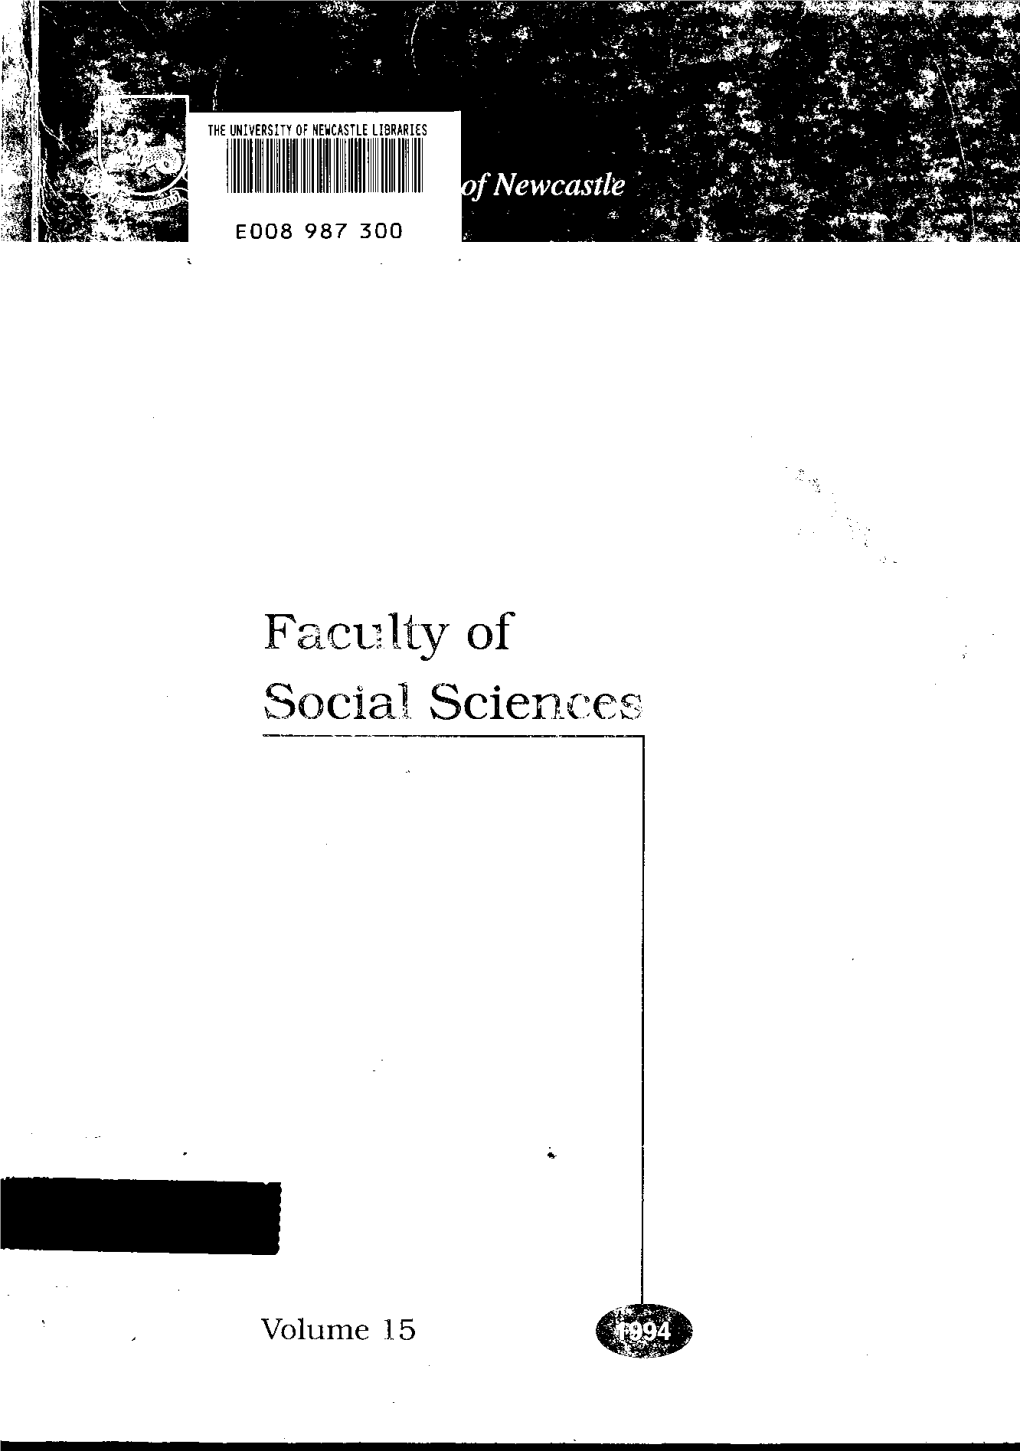 Faculty of Social Sciences Handbook, 1994